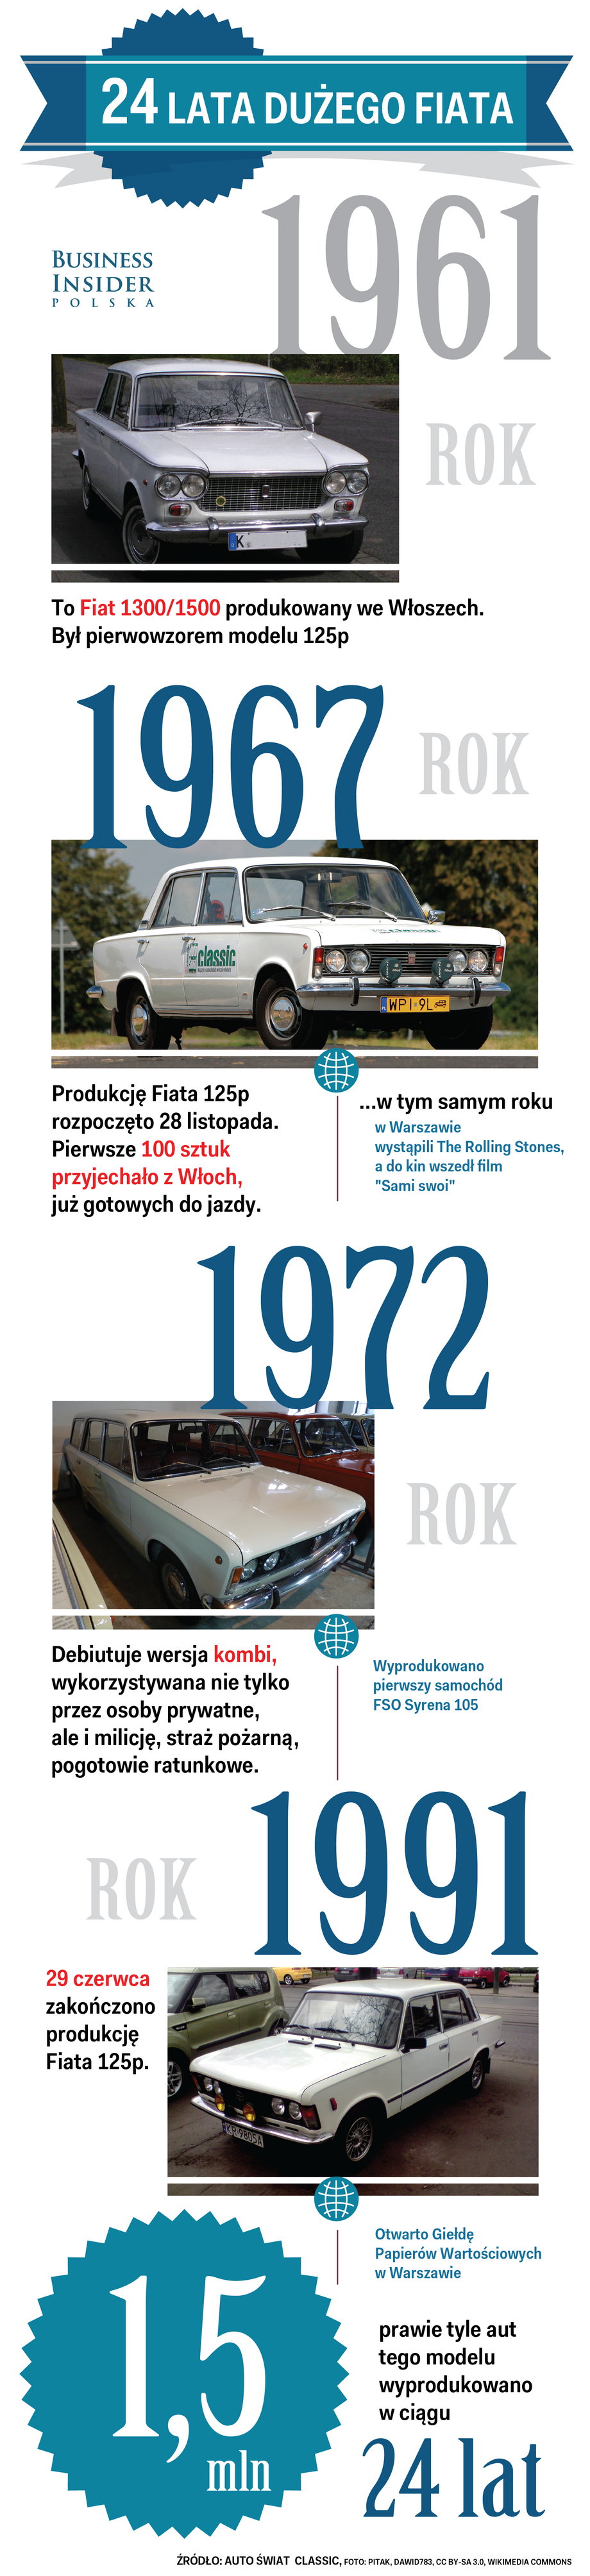 Historia Dużego Fiata 125p